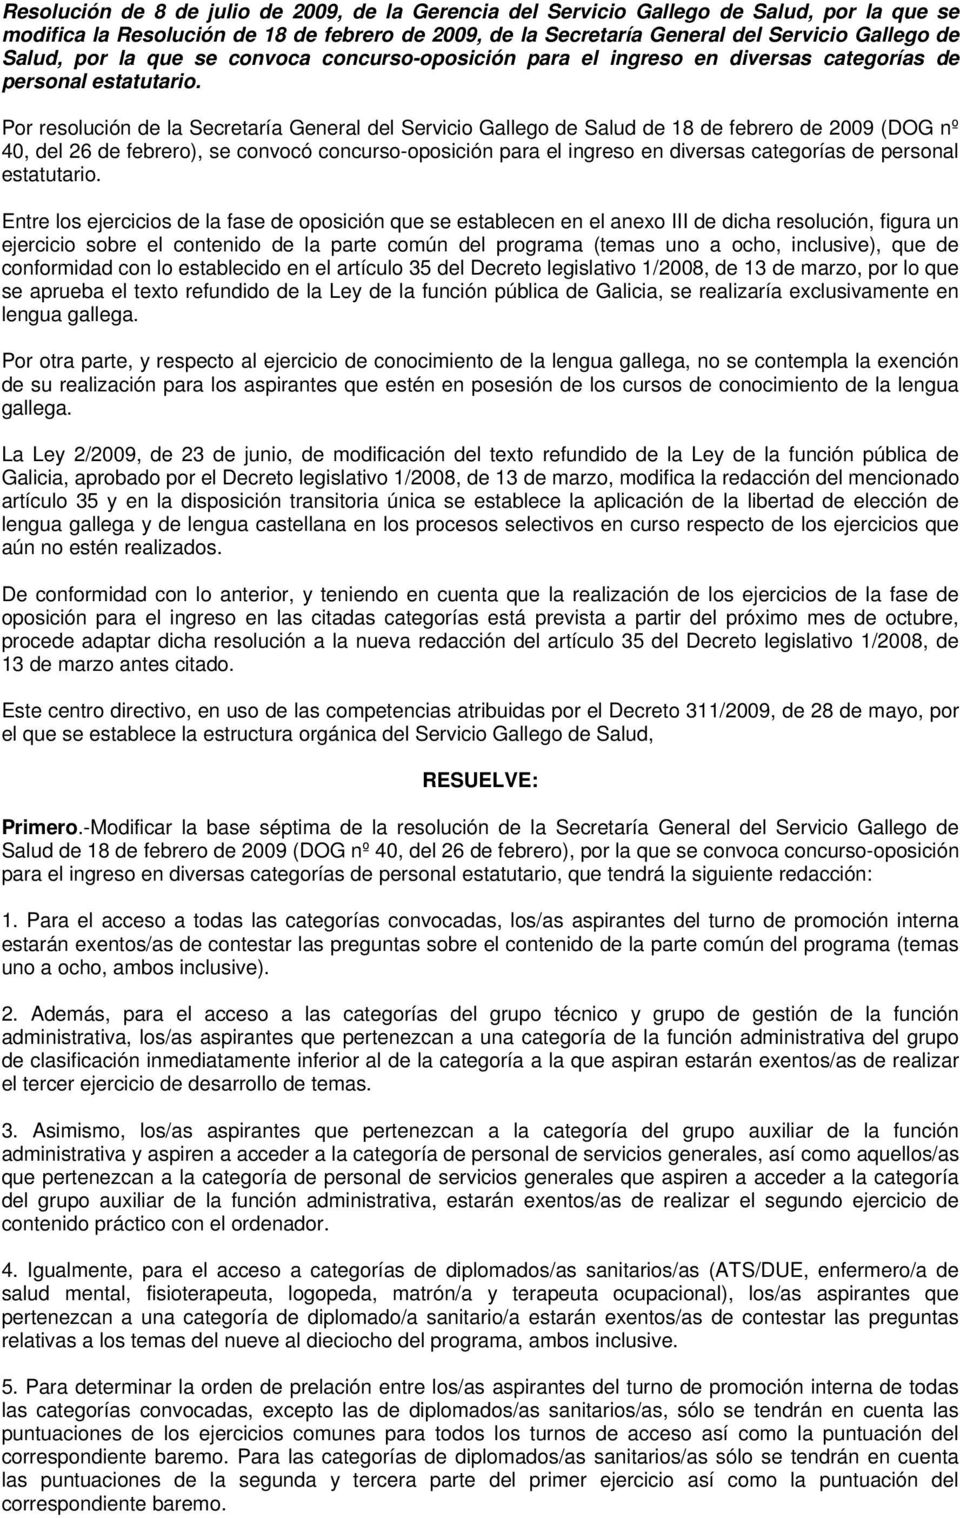 Por resolución de la Secretaría General del Servicio Gallego de Salud de 18 de febrero de 2009 (DOG nº 40, del 26 de febrero), se convocó concurso-oposición para el ingreso en diversas categorías de